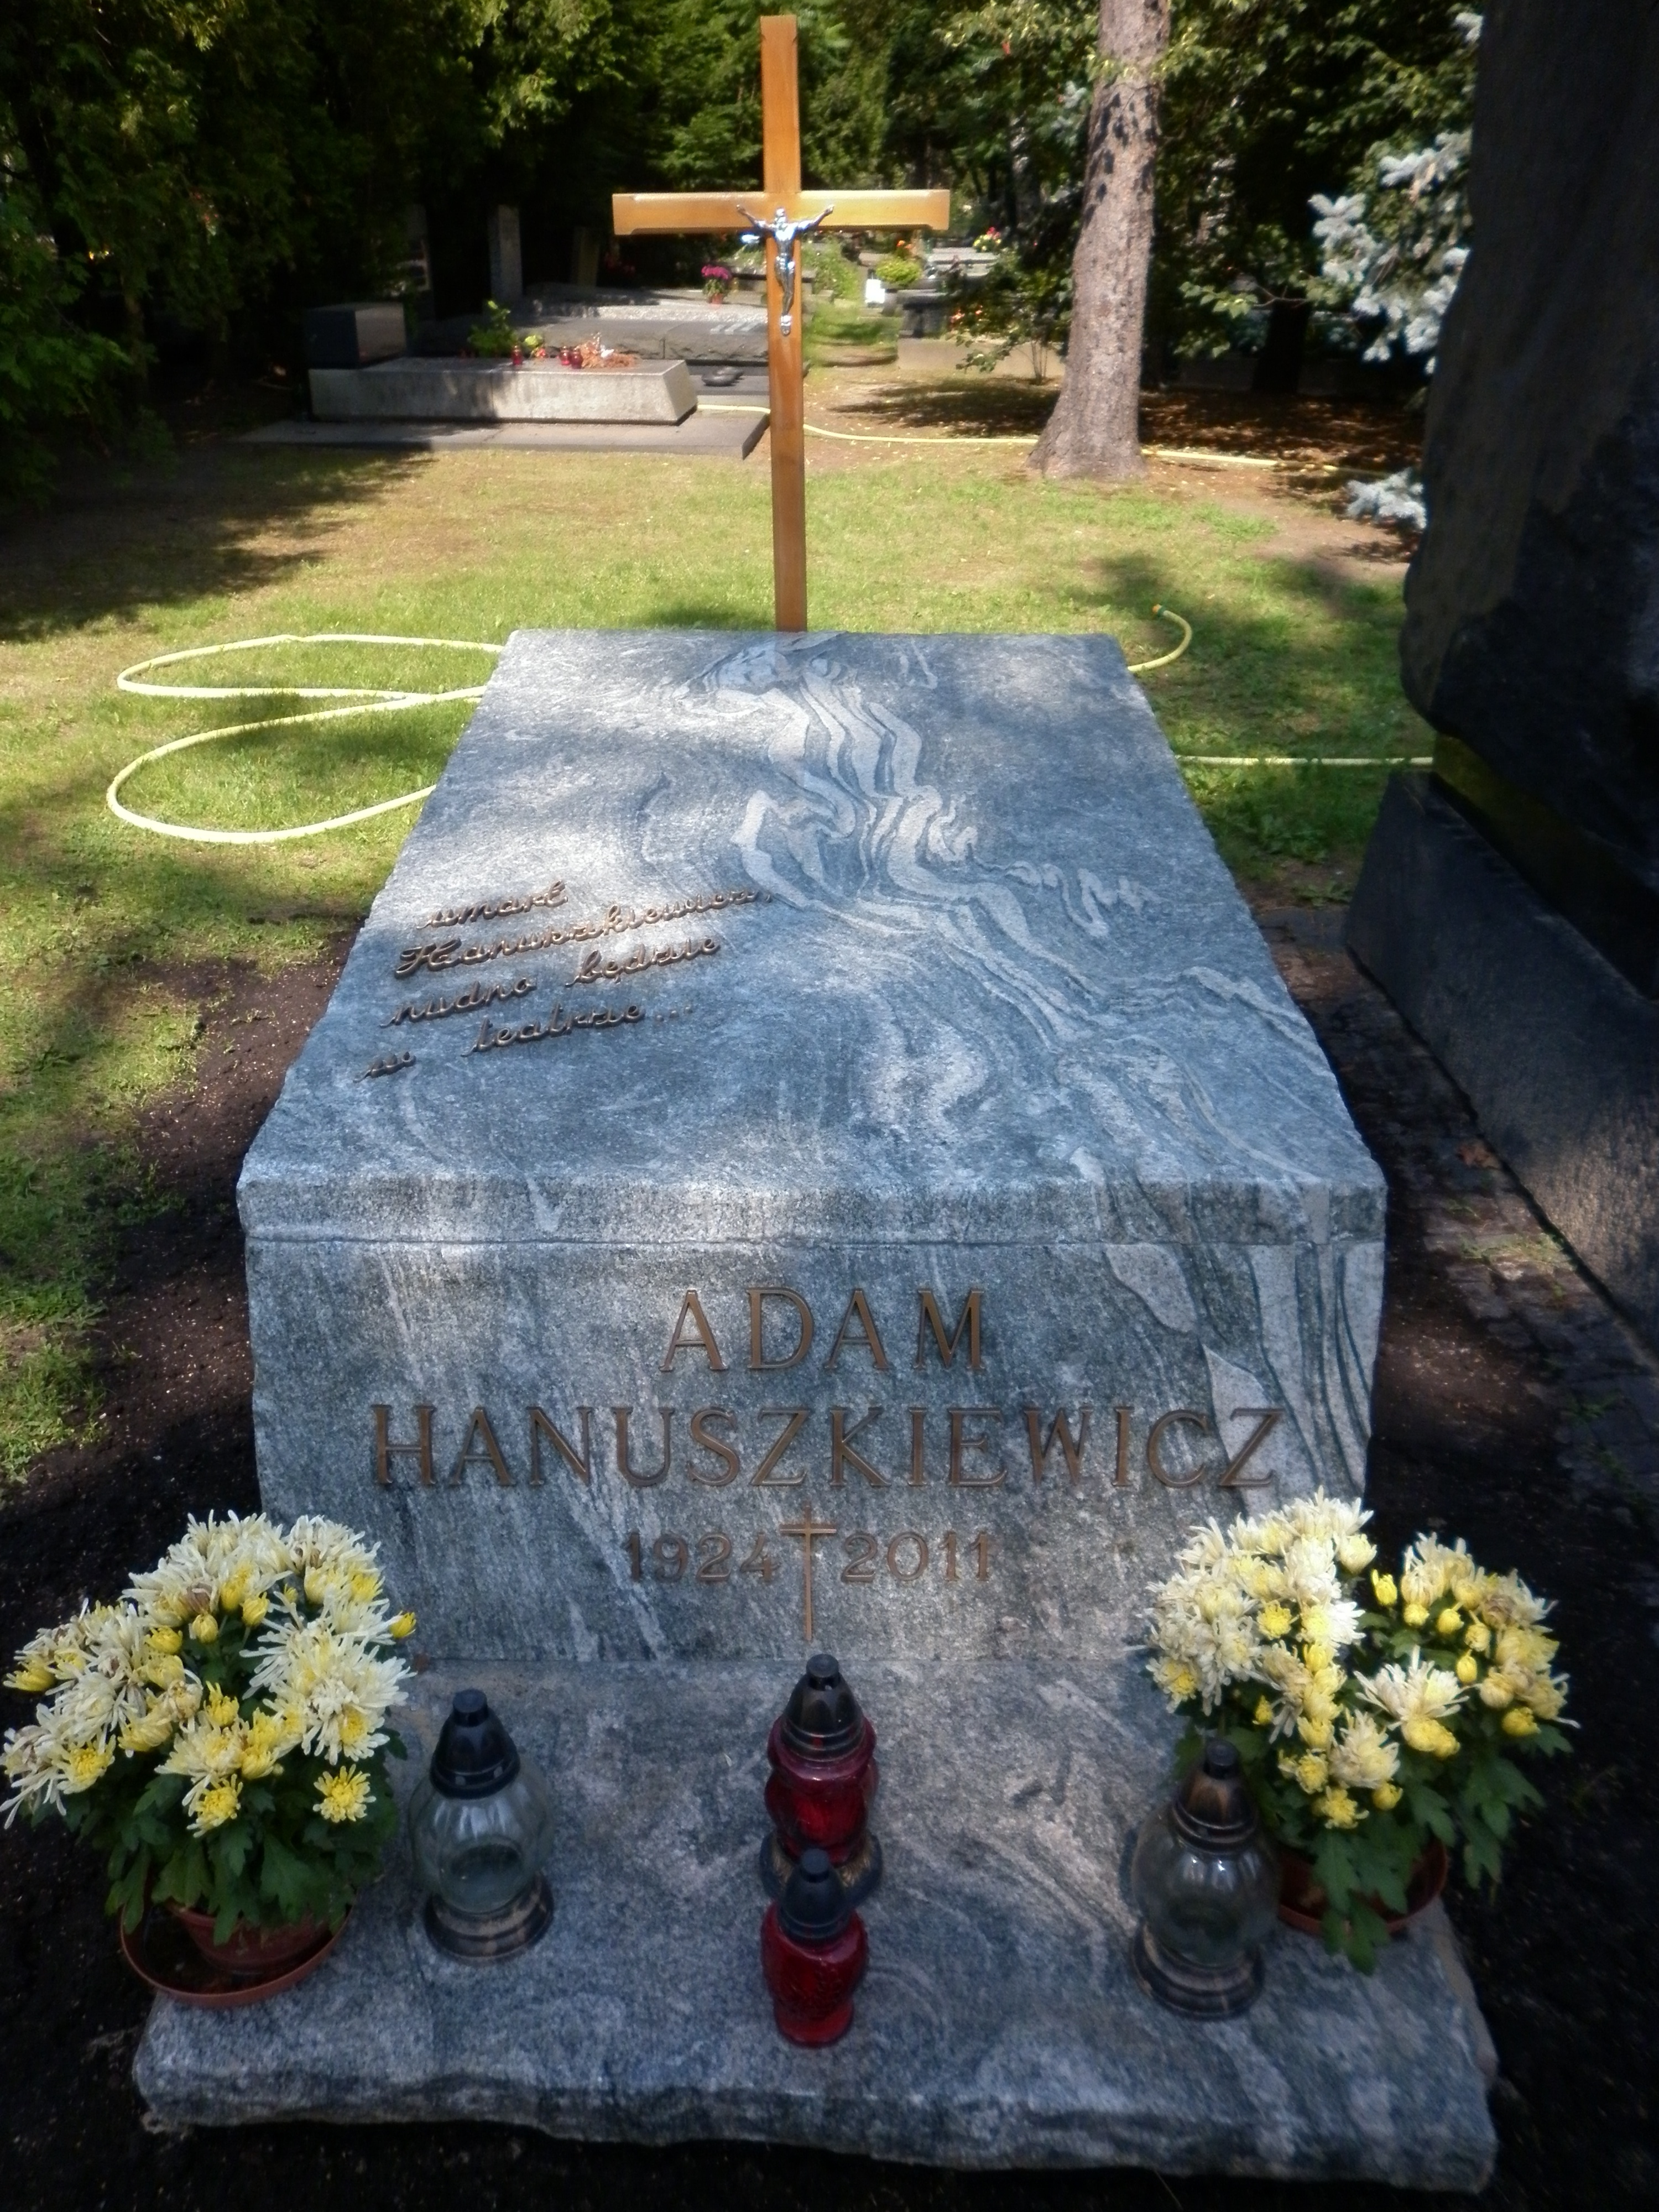 Wikipedia, Adam Hanuszkiewicz, Self-published work, Warsaw Military Cemetery - H